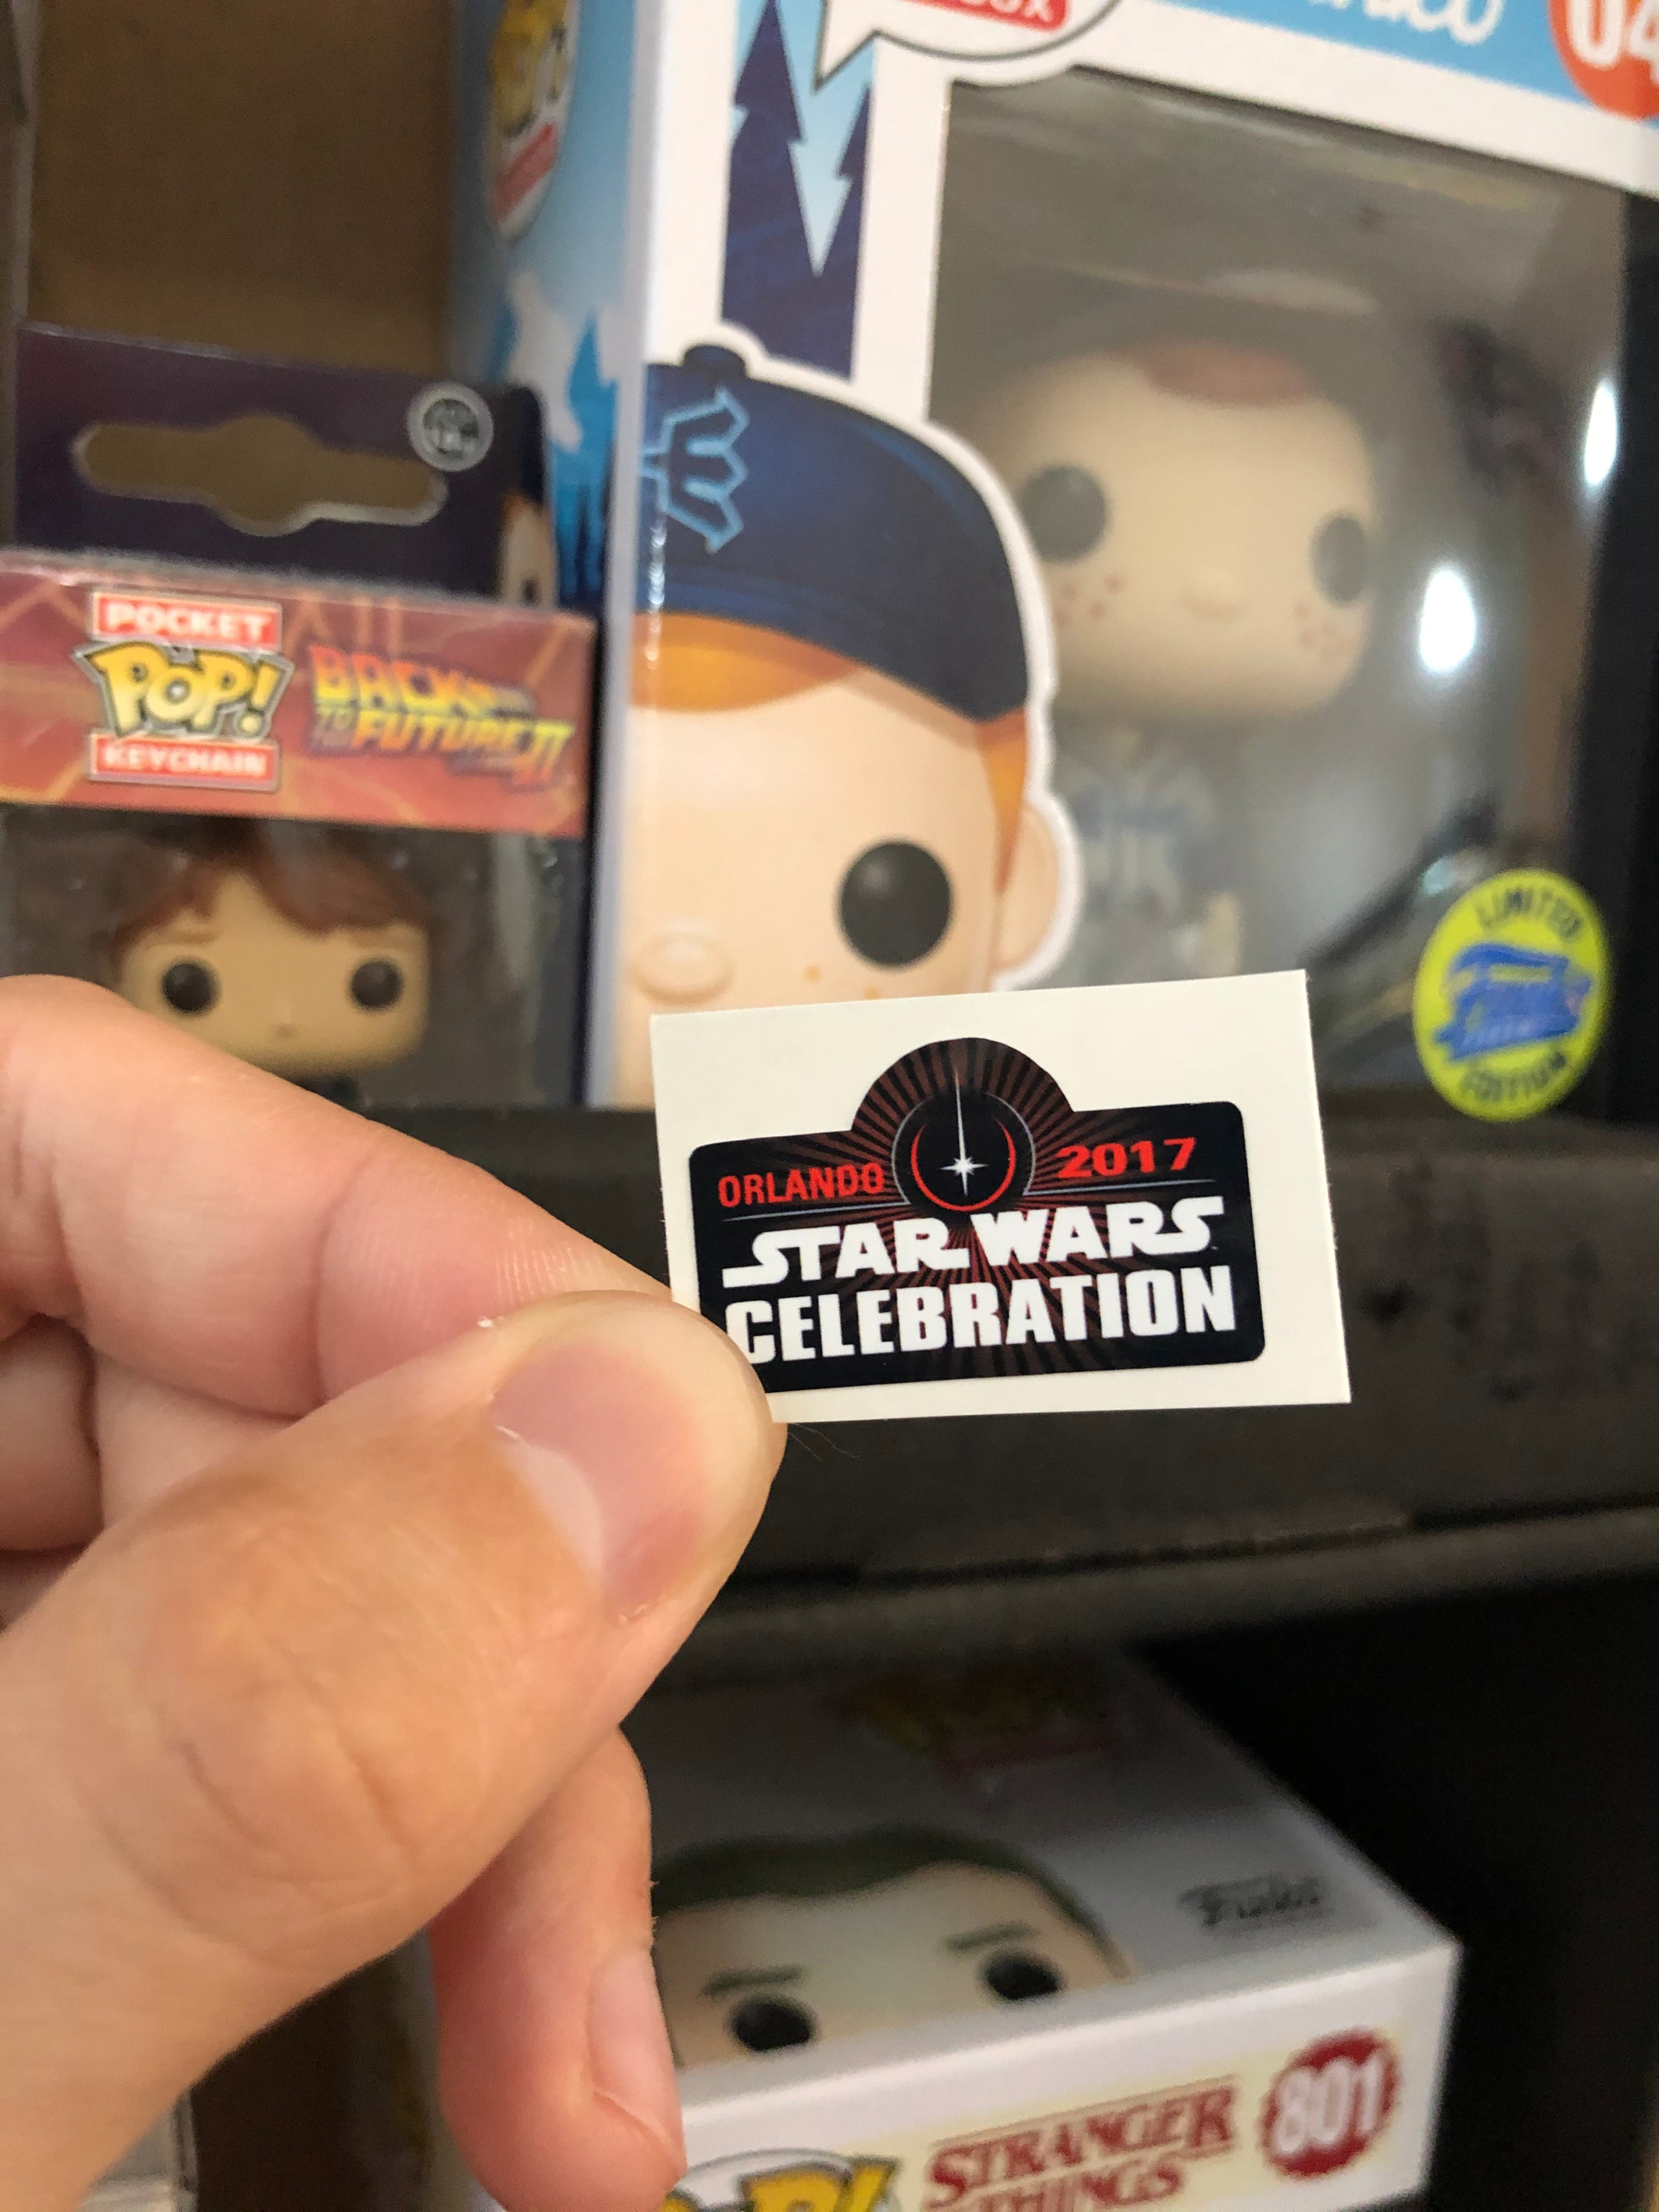 2017 Star Wars Celebration Orlando "Look Sir Ume" Stormtrooper Decal Sticker 